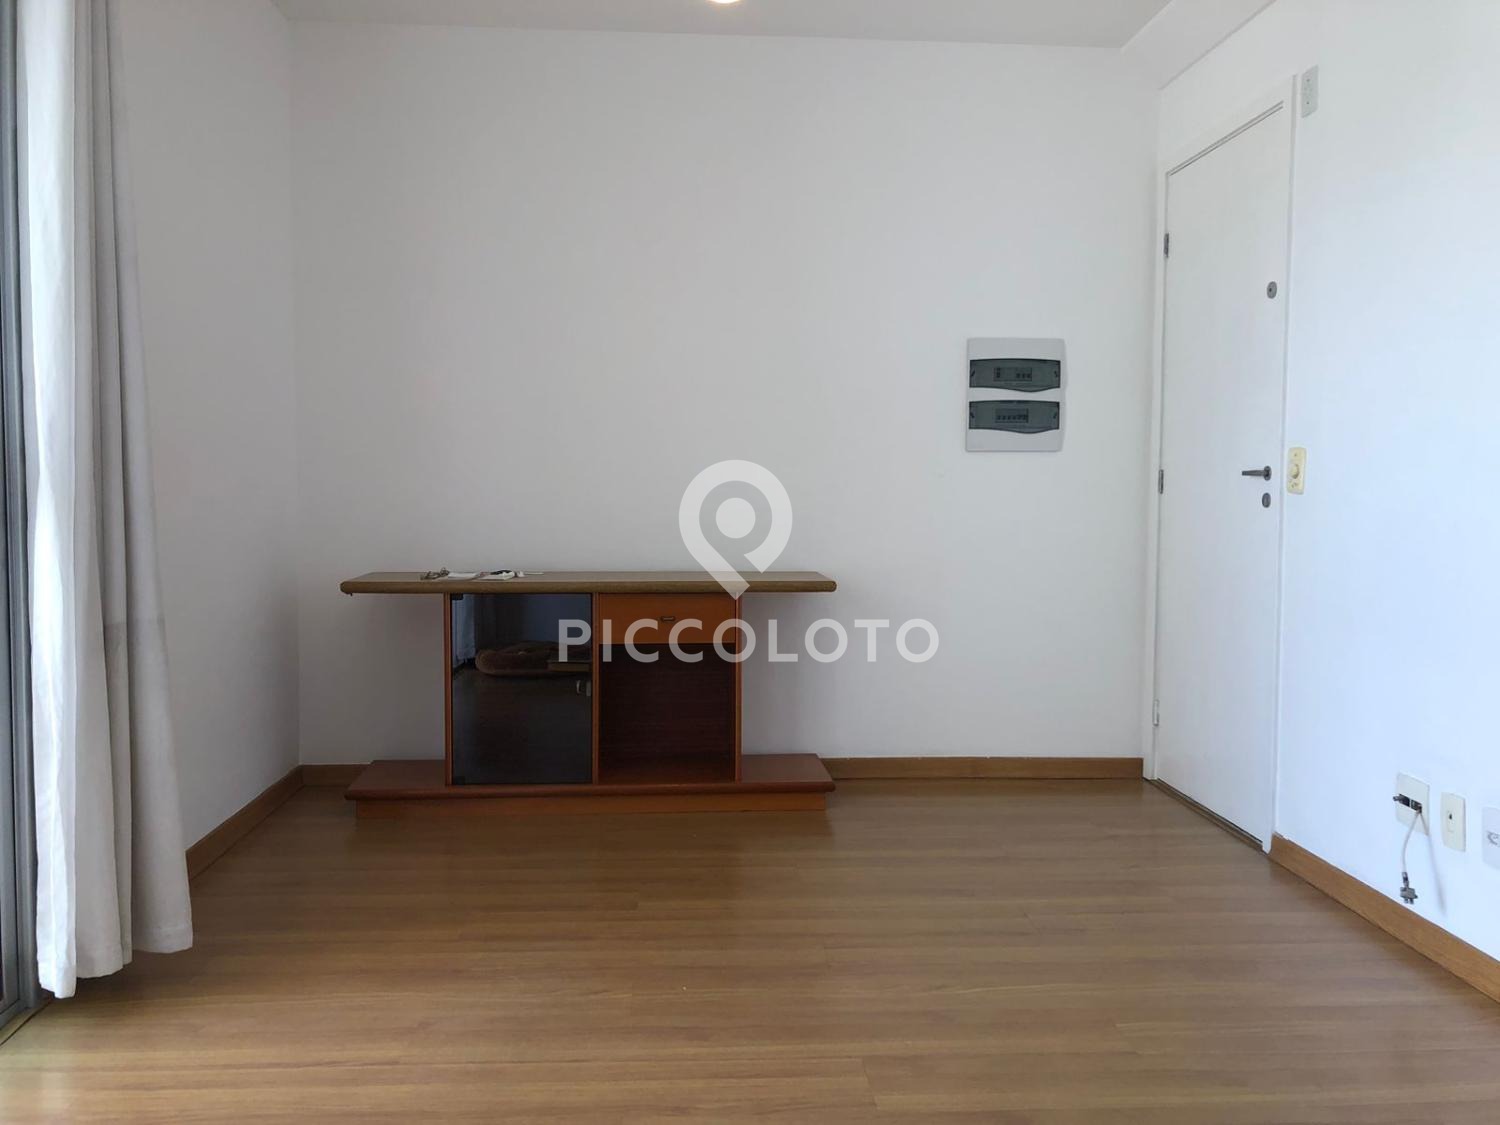 Piccoloto -Apartamento à venda no Jardim Aurelia em Campinas